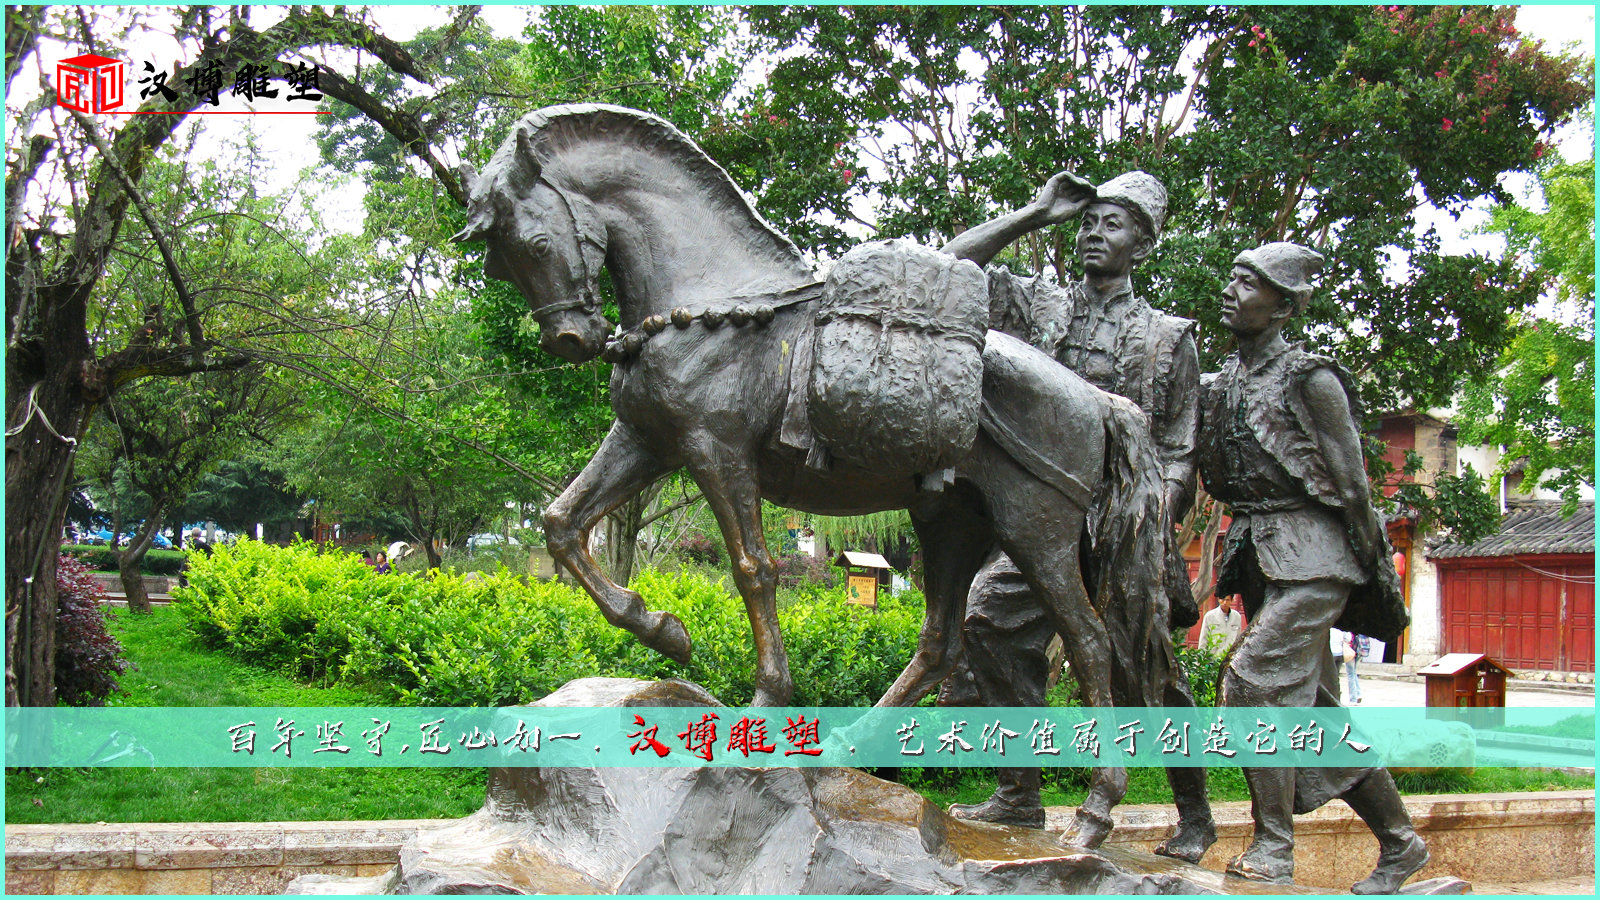 茶马古道主题雕塑,动物雕塑,园林景观铜雕